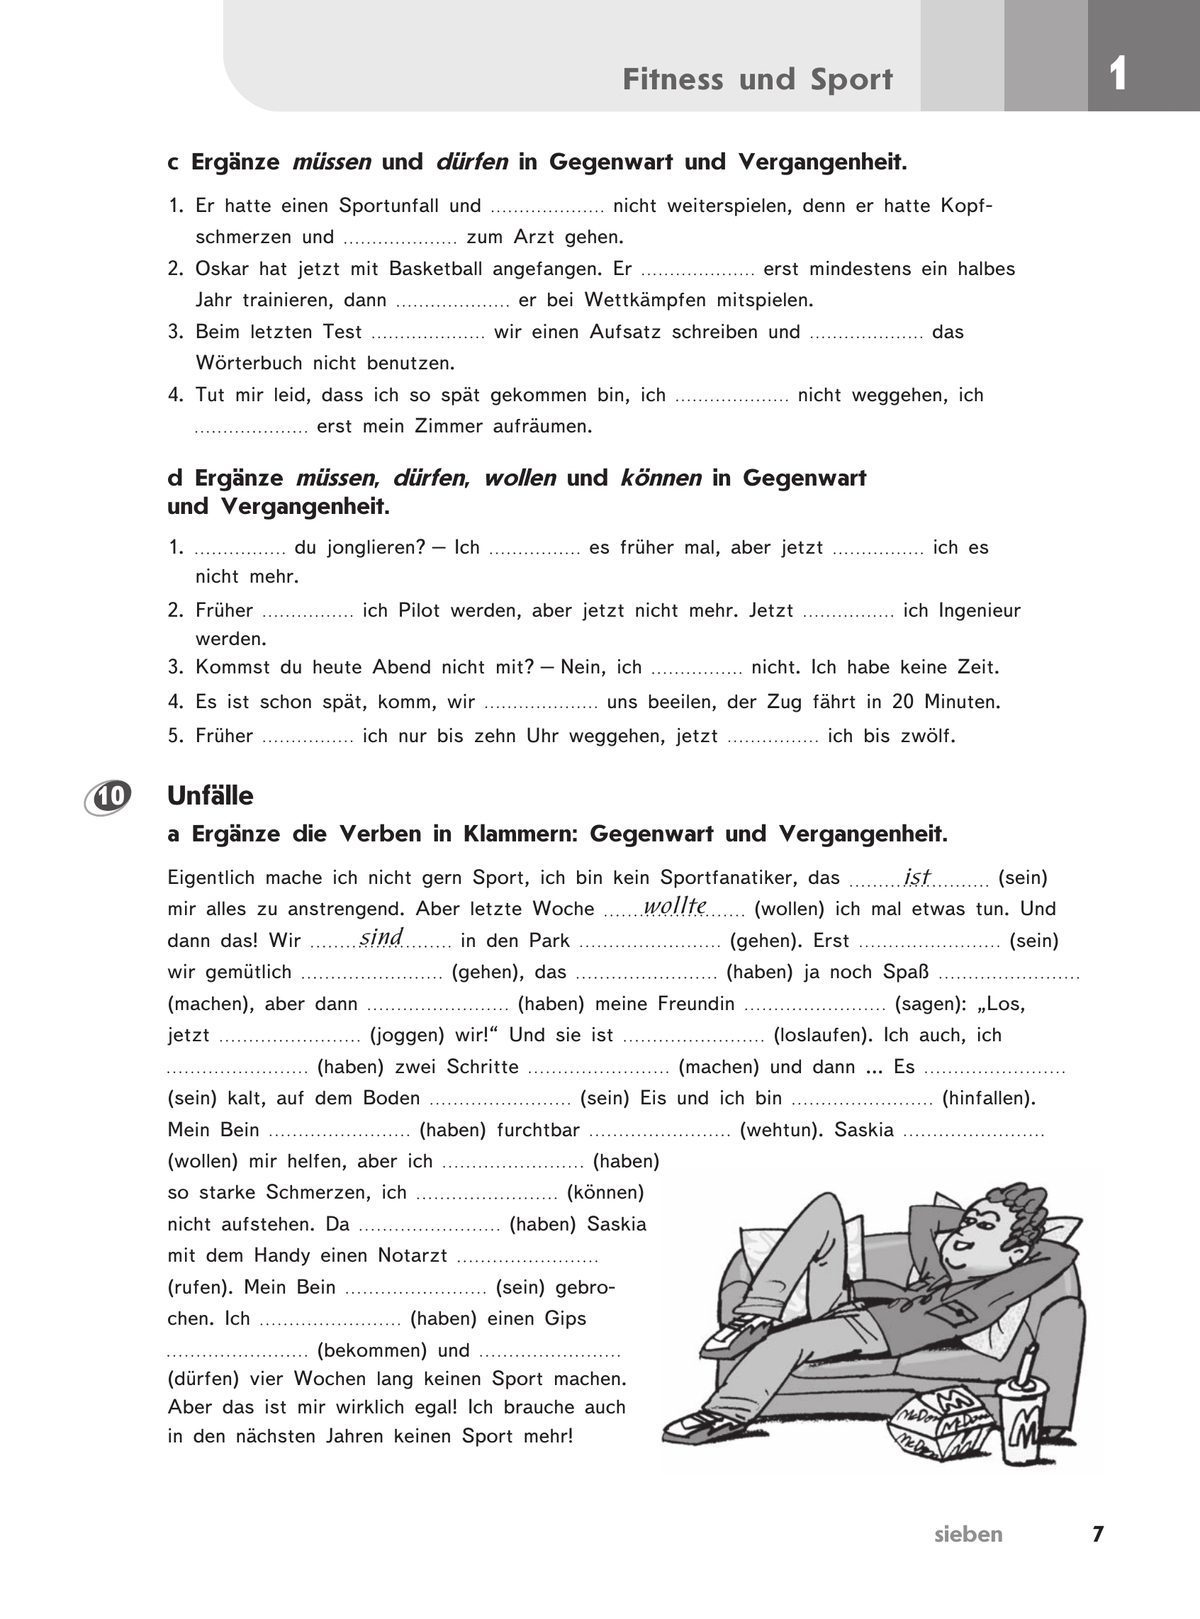 Немецкий язык. Второй иностранный язык. Рабочая тетрадь. 8 класс 10